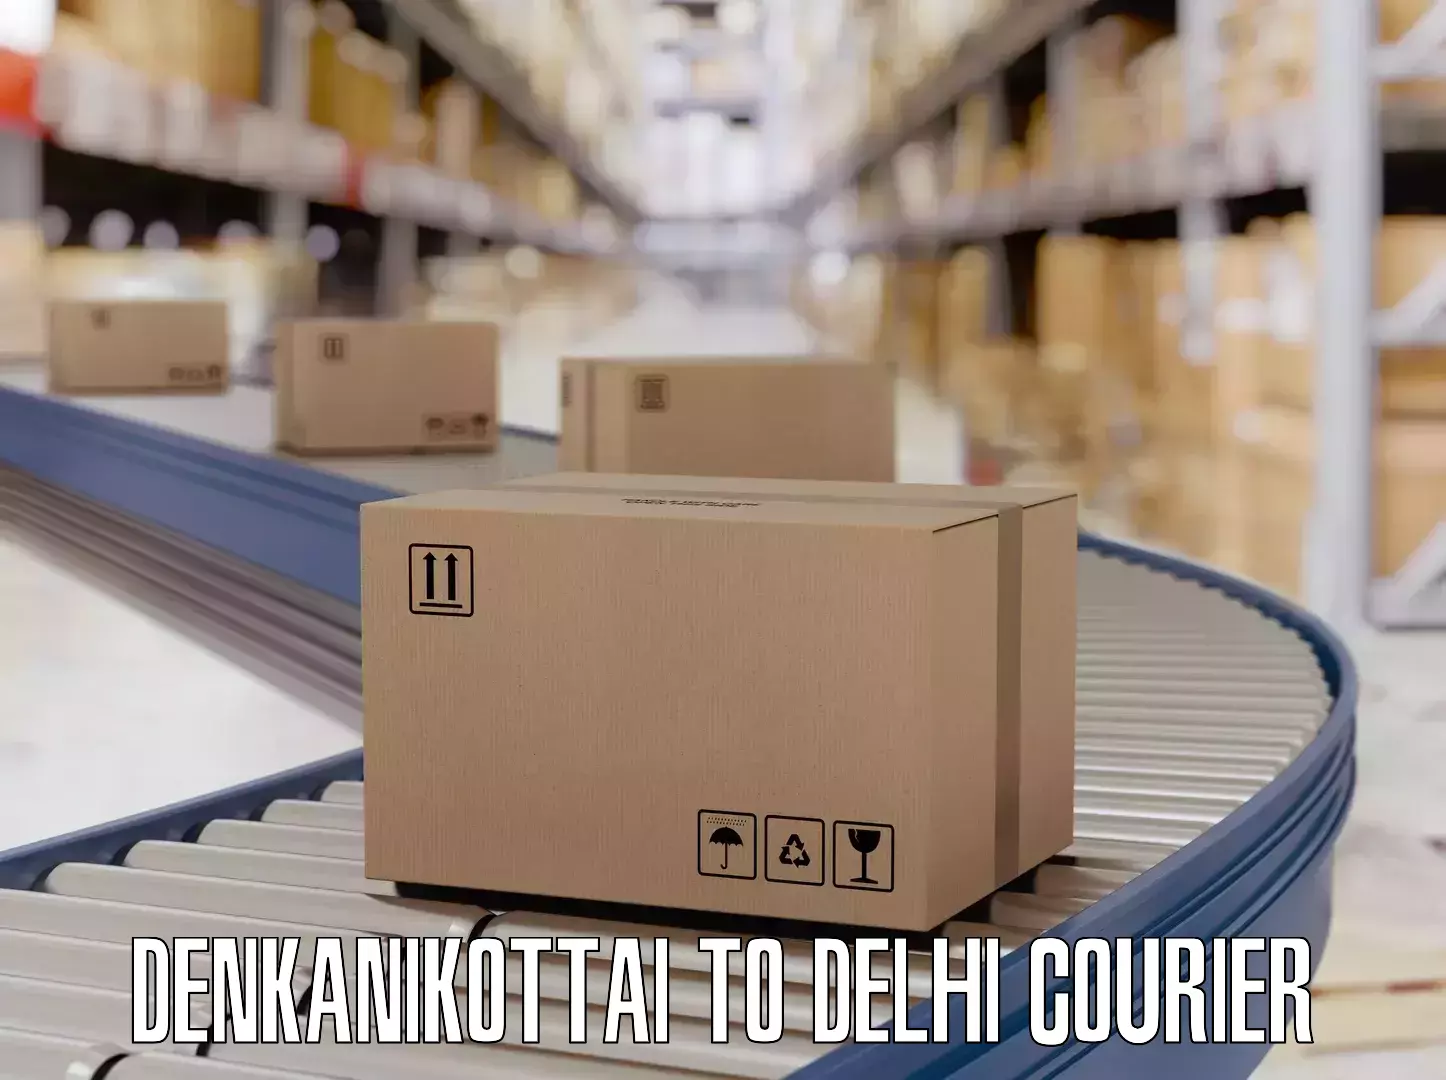 Luggage dispatch service Denkanikottai to NIT Delhi